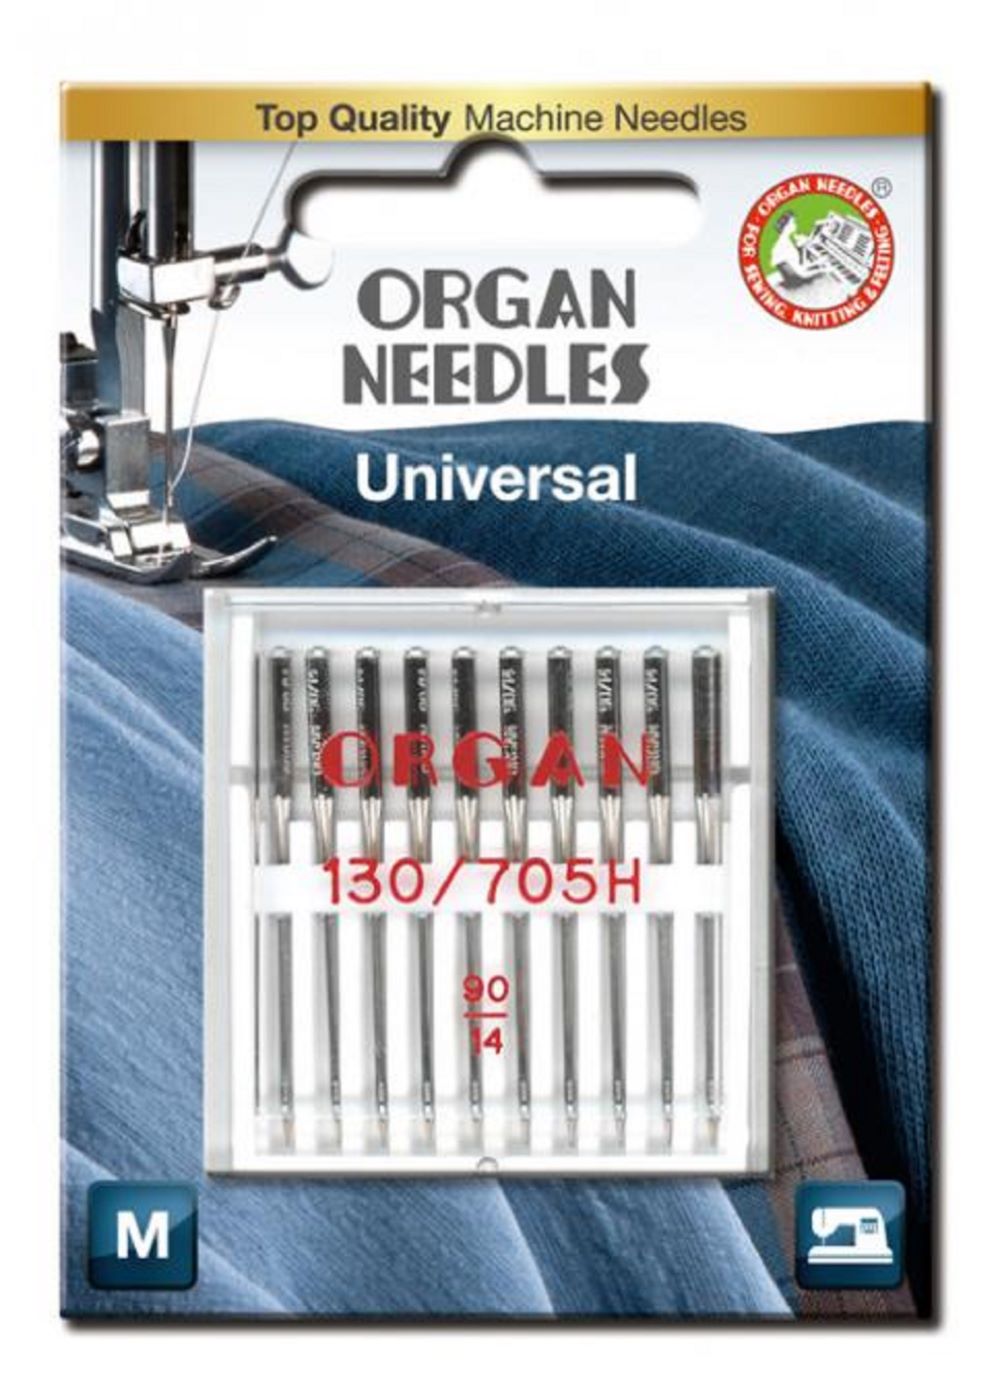 Organ Maschinennadeln 130/705 H Universal 090 á 10 Blister